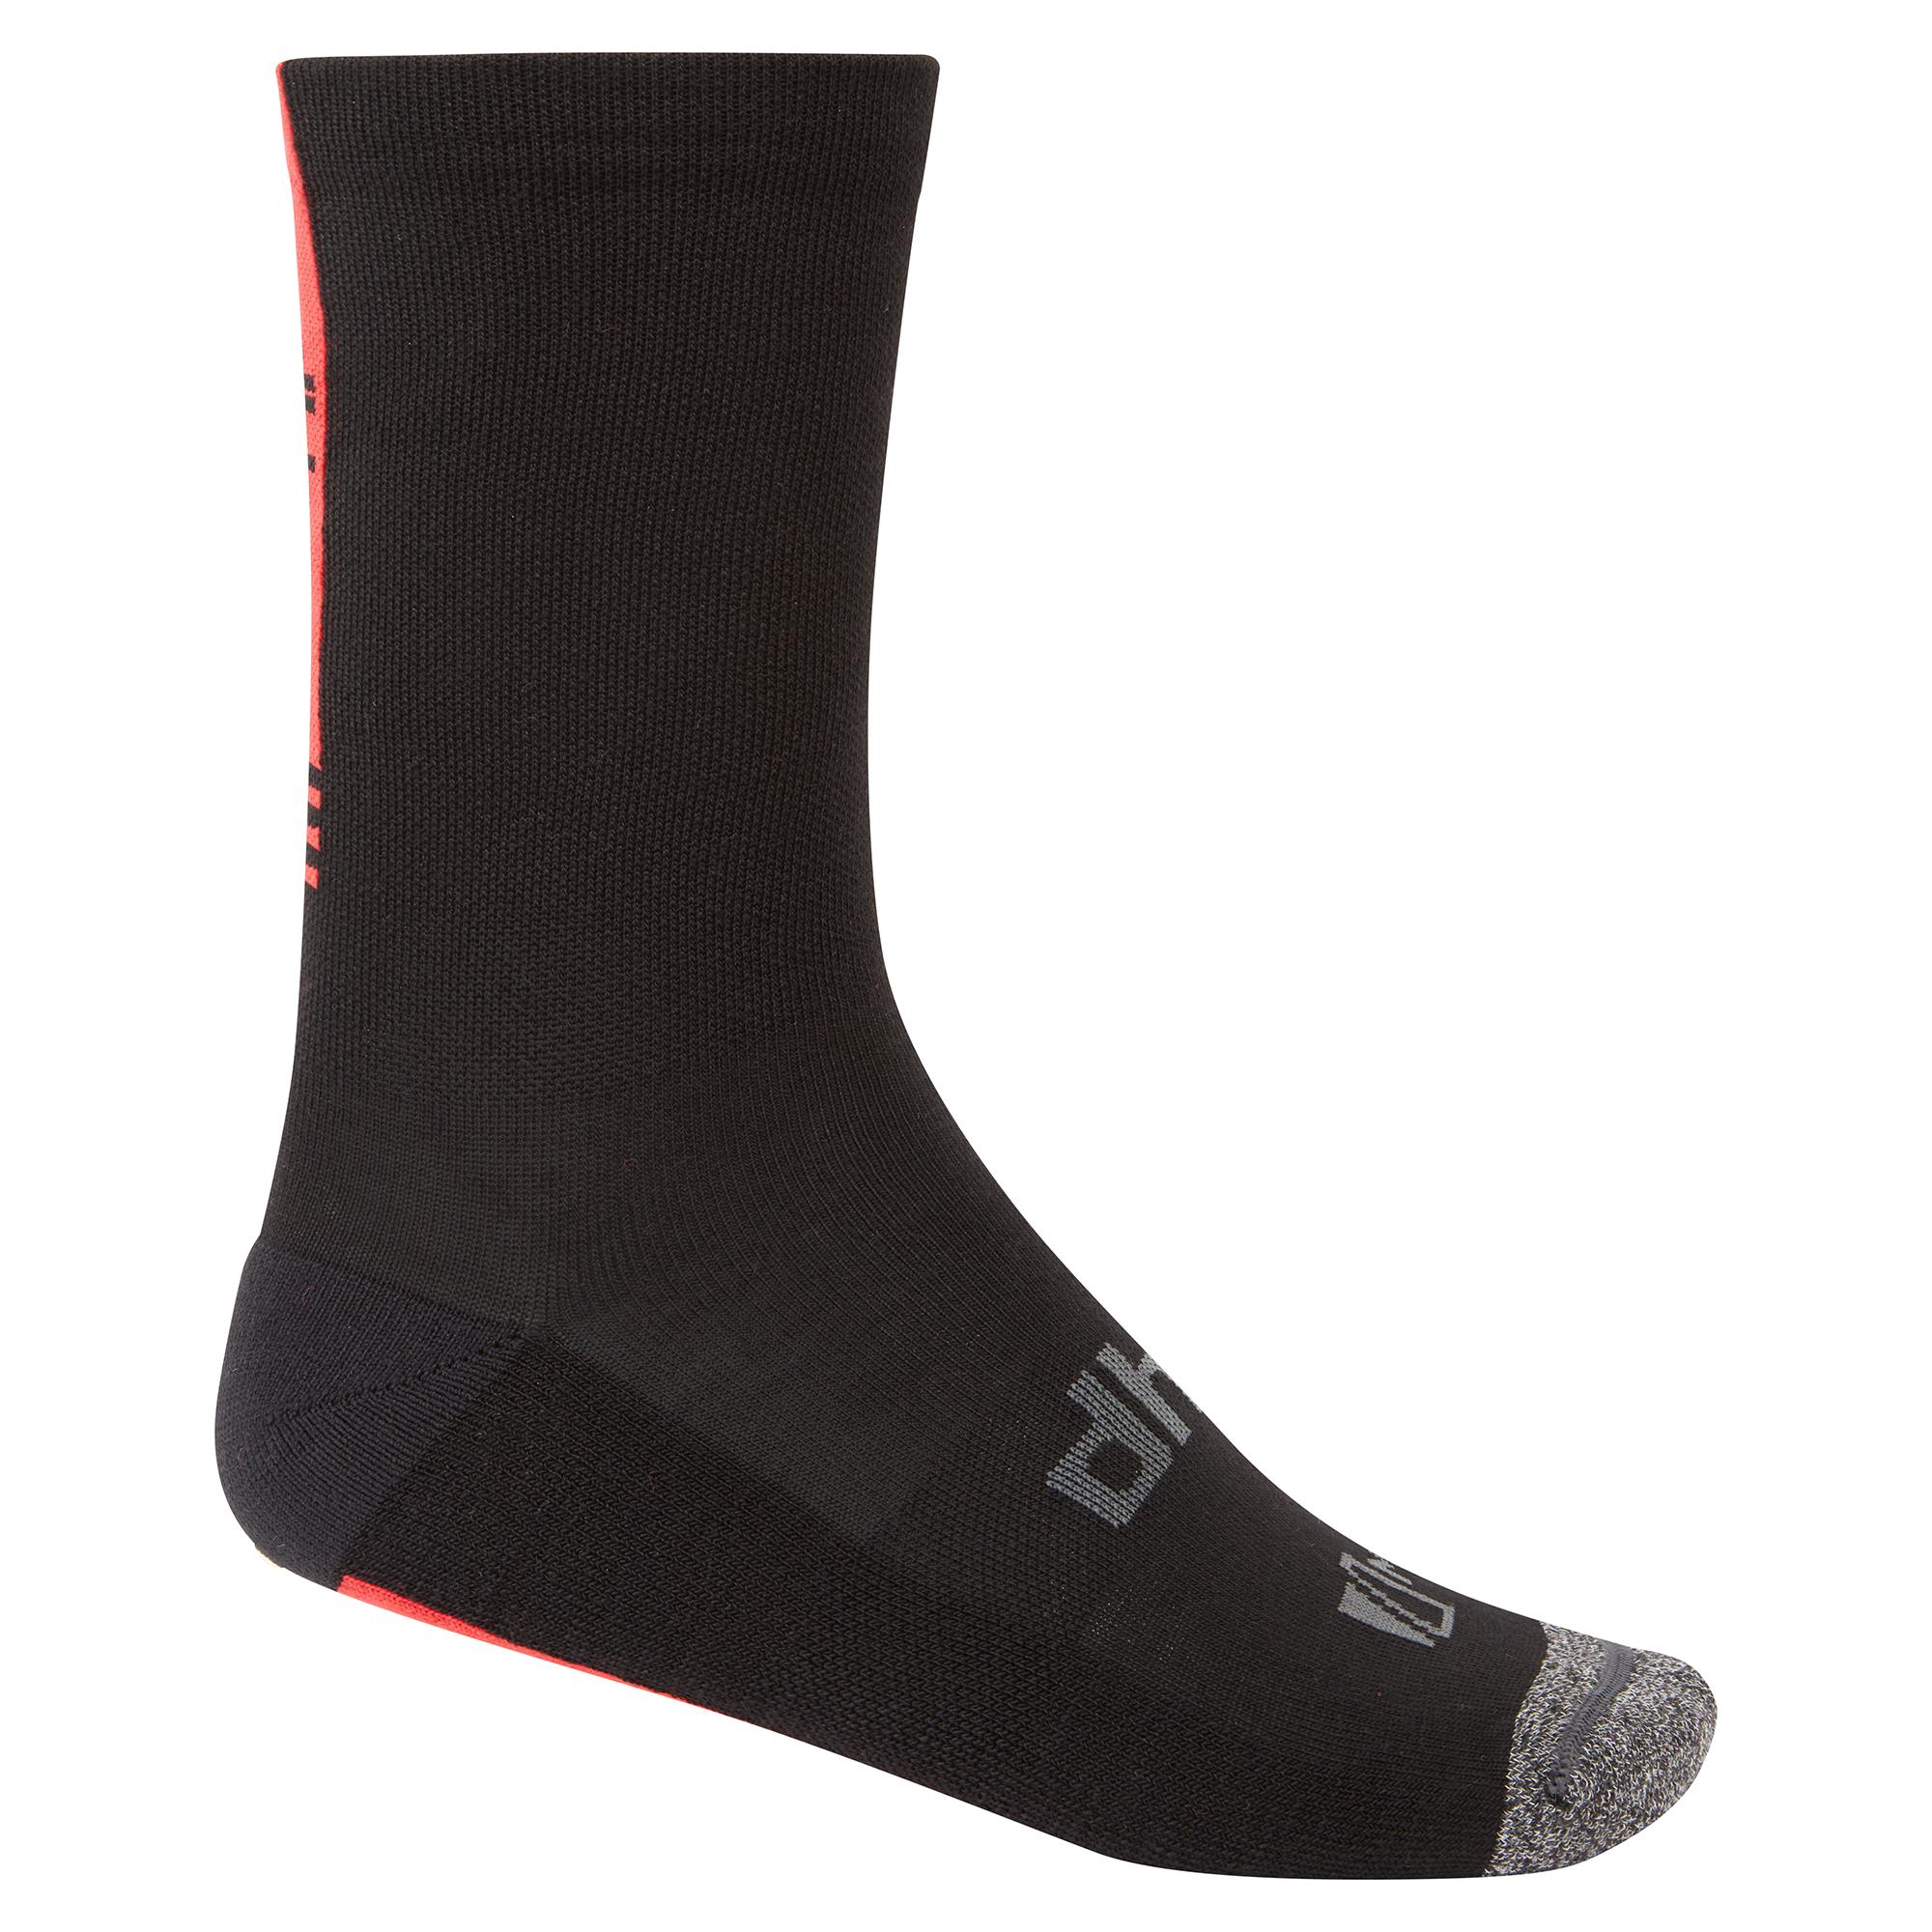 Dhb Aeron Winter Weight Merino Sock 2.0 - Black/red